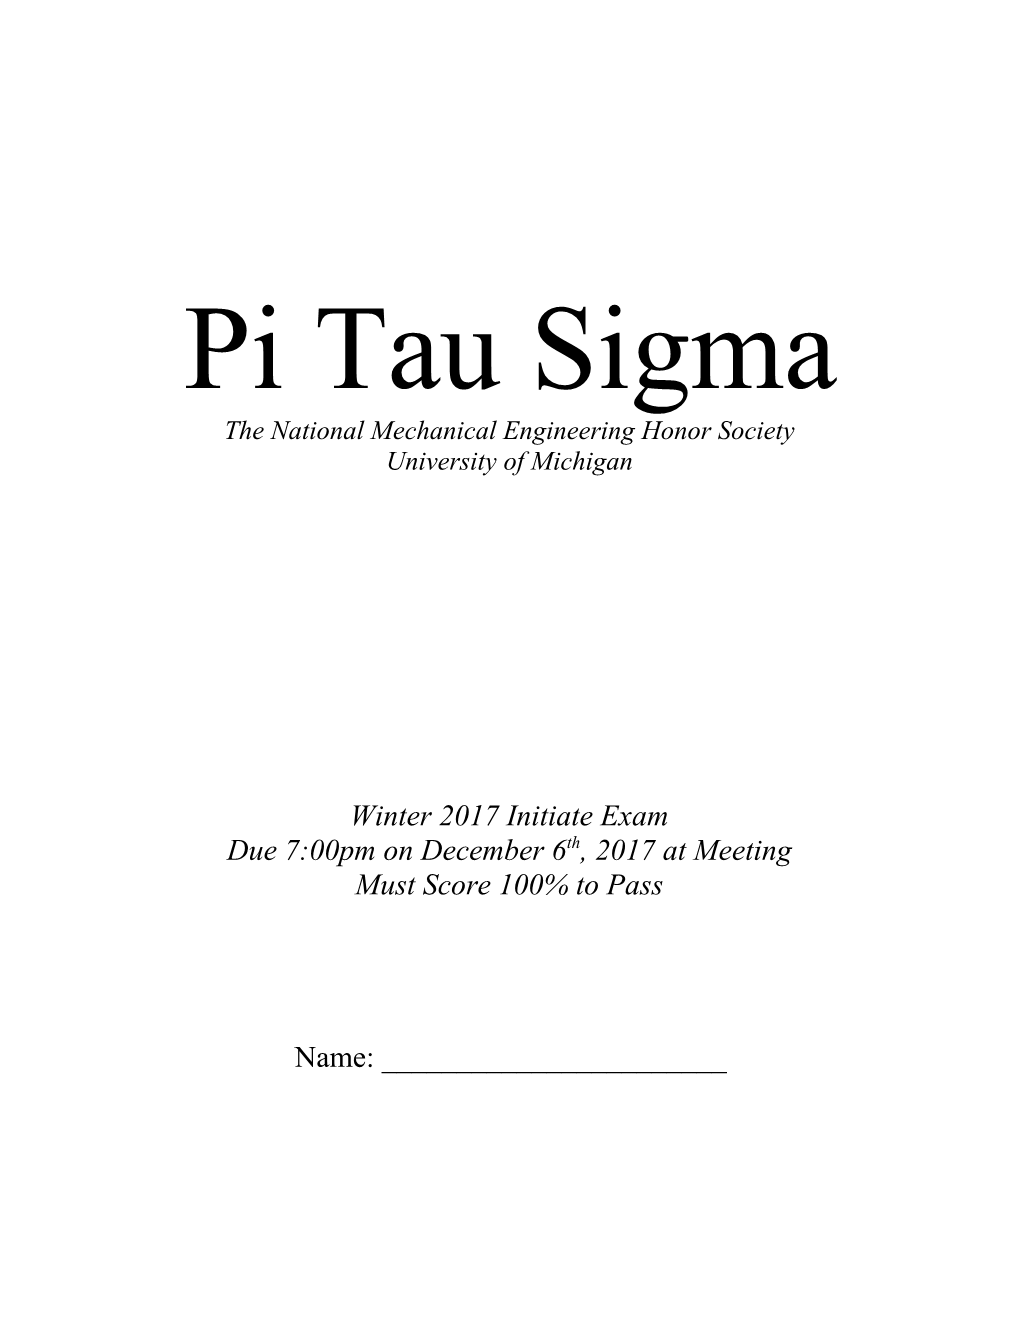 Pi Tau Sigma Initiate Exam